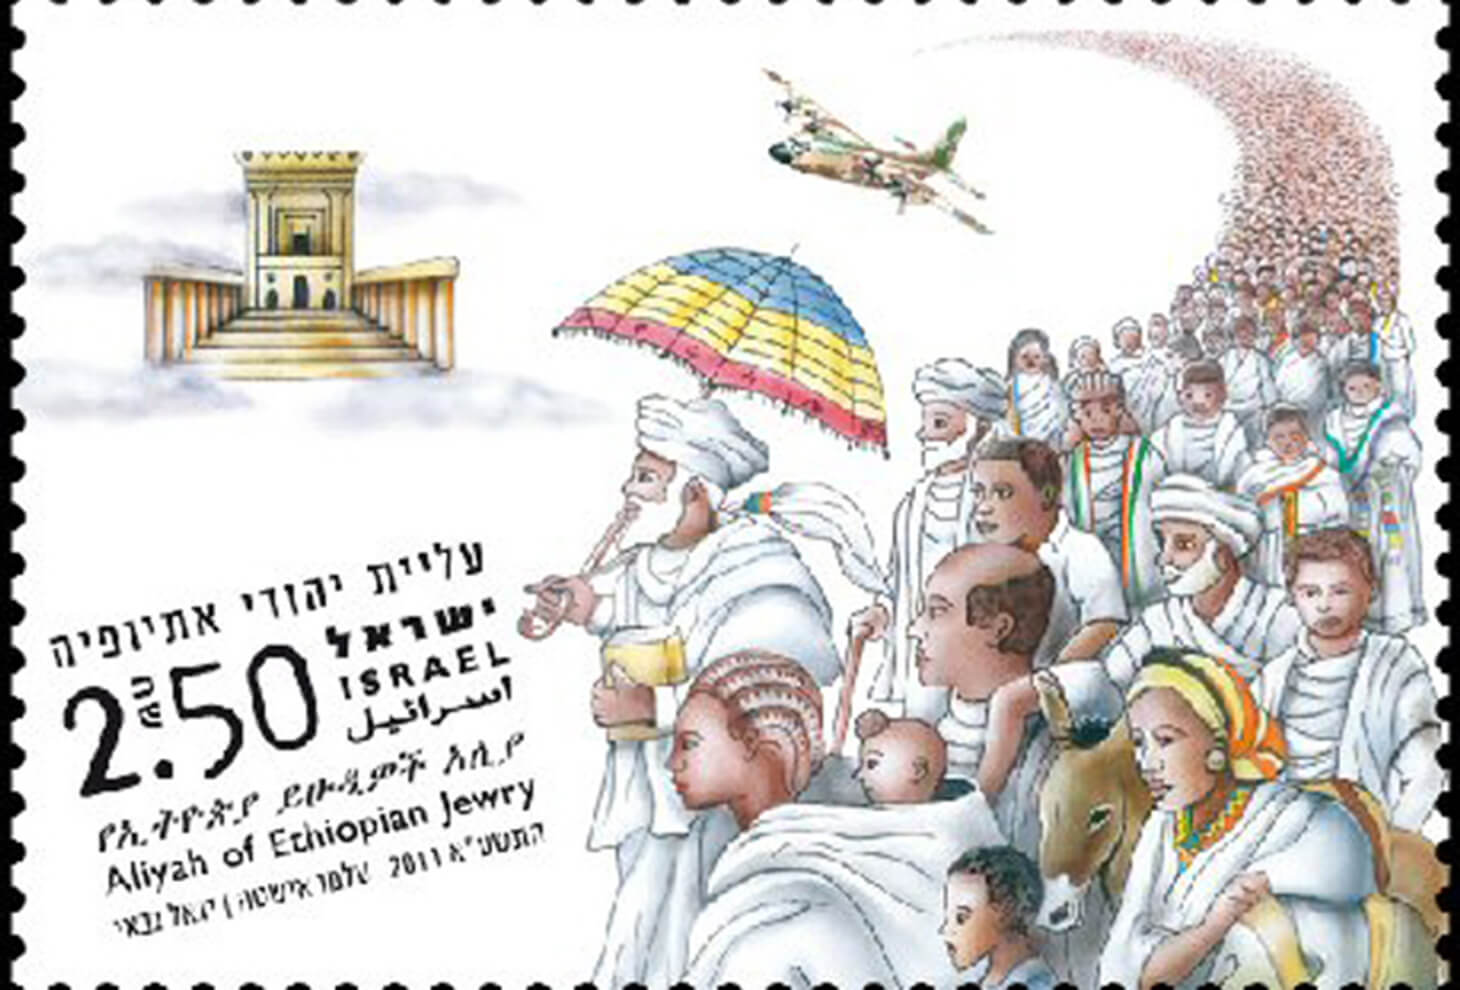 בול עליית יהודי אתיופיה, השירות הבולאי, עיצוב : עלמו אישטה, יגאל גבאי